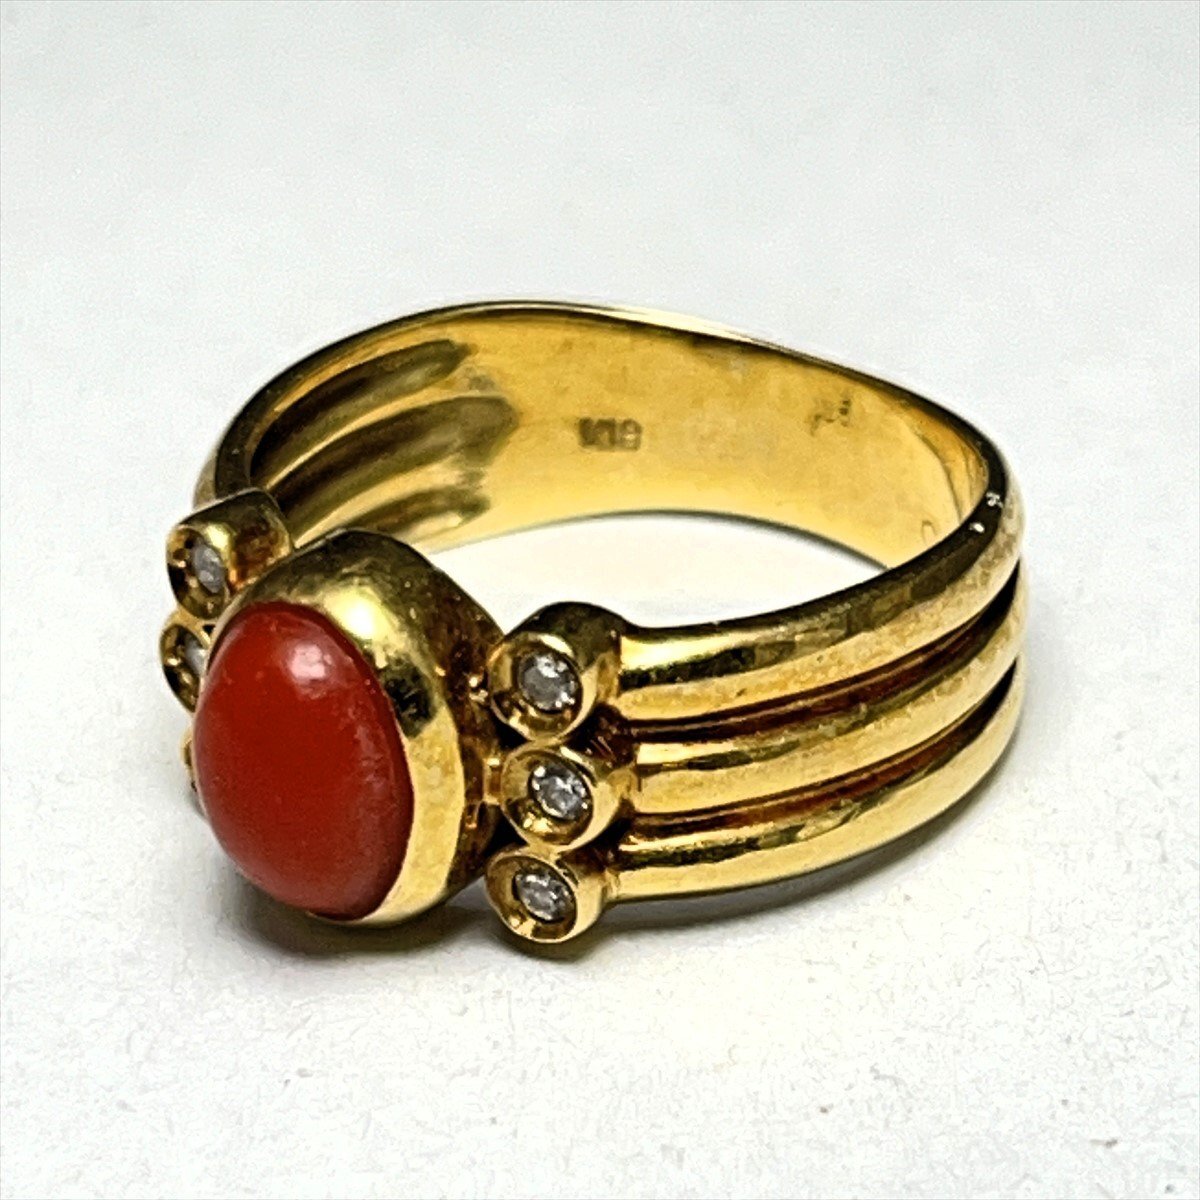 ◆ 赤珊瑚 コーラル K18 ダイヤ装飾 リング 指輪 総重量3.8g 日本サイズ8号内径15.4㎜◆